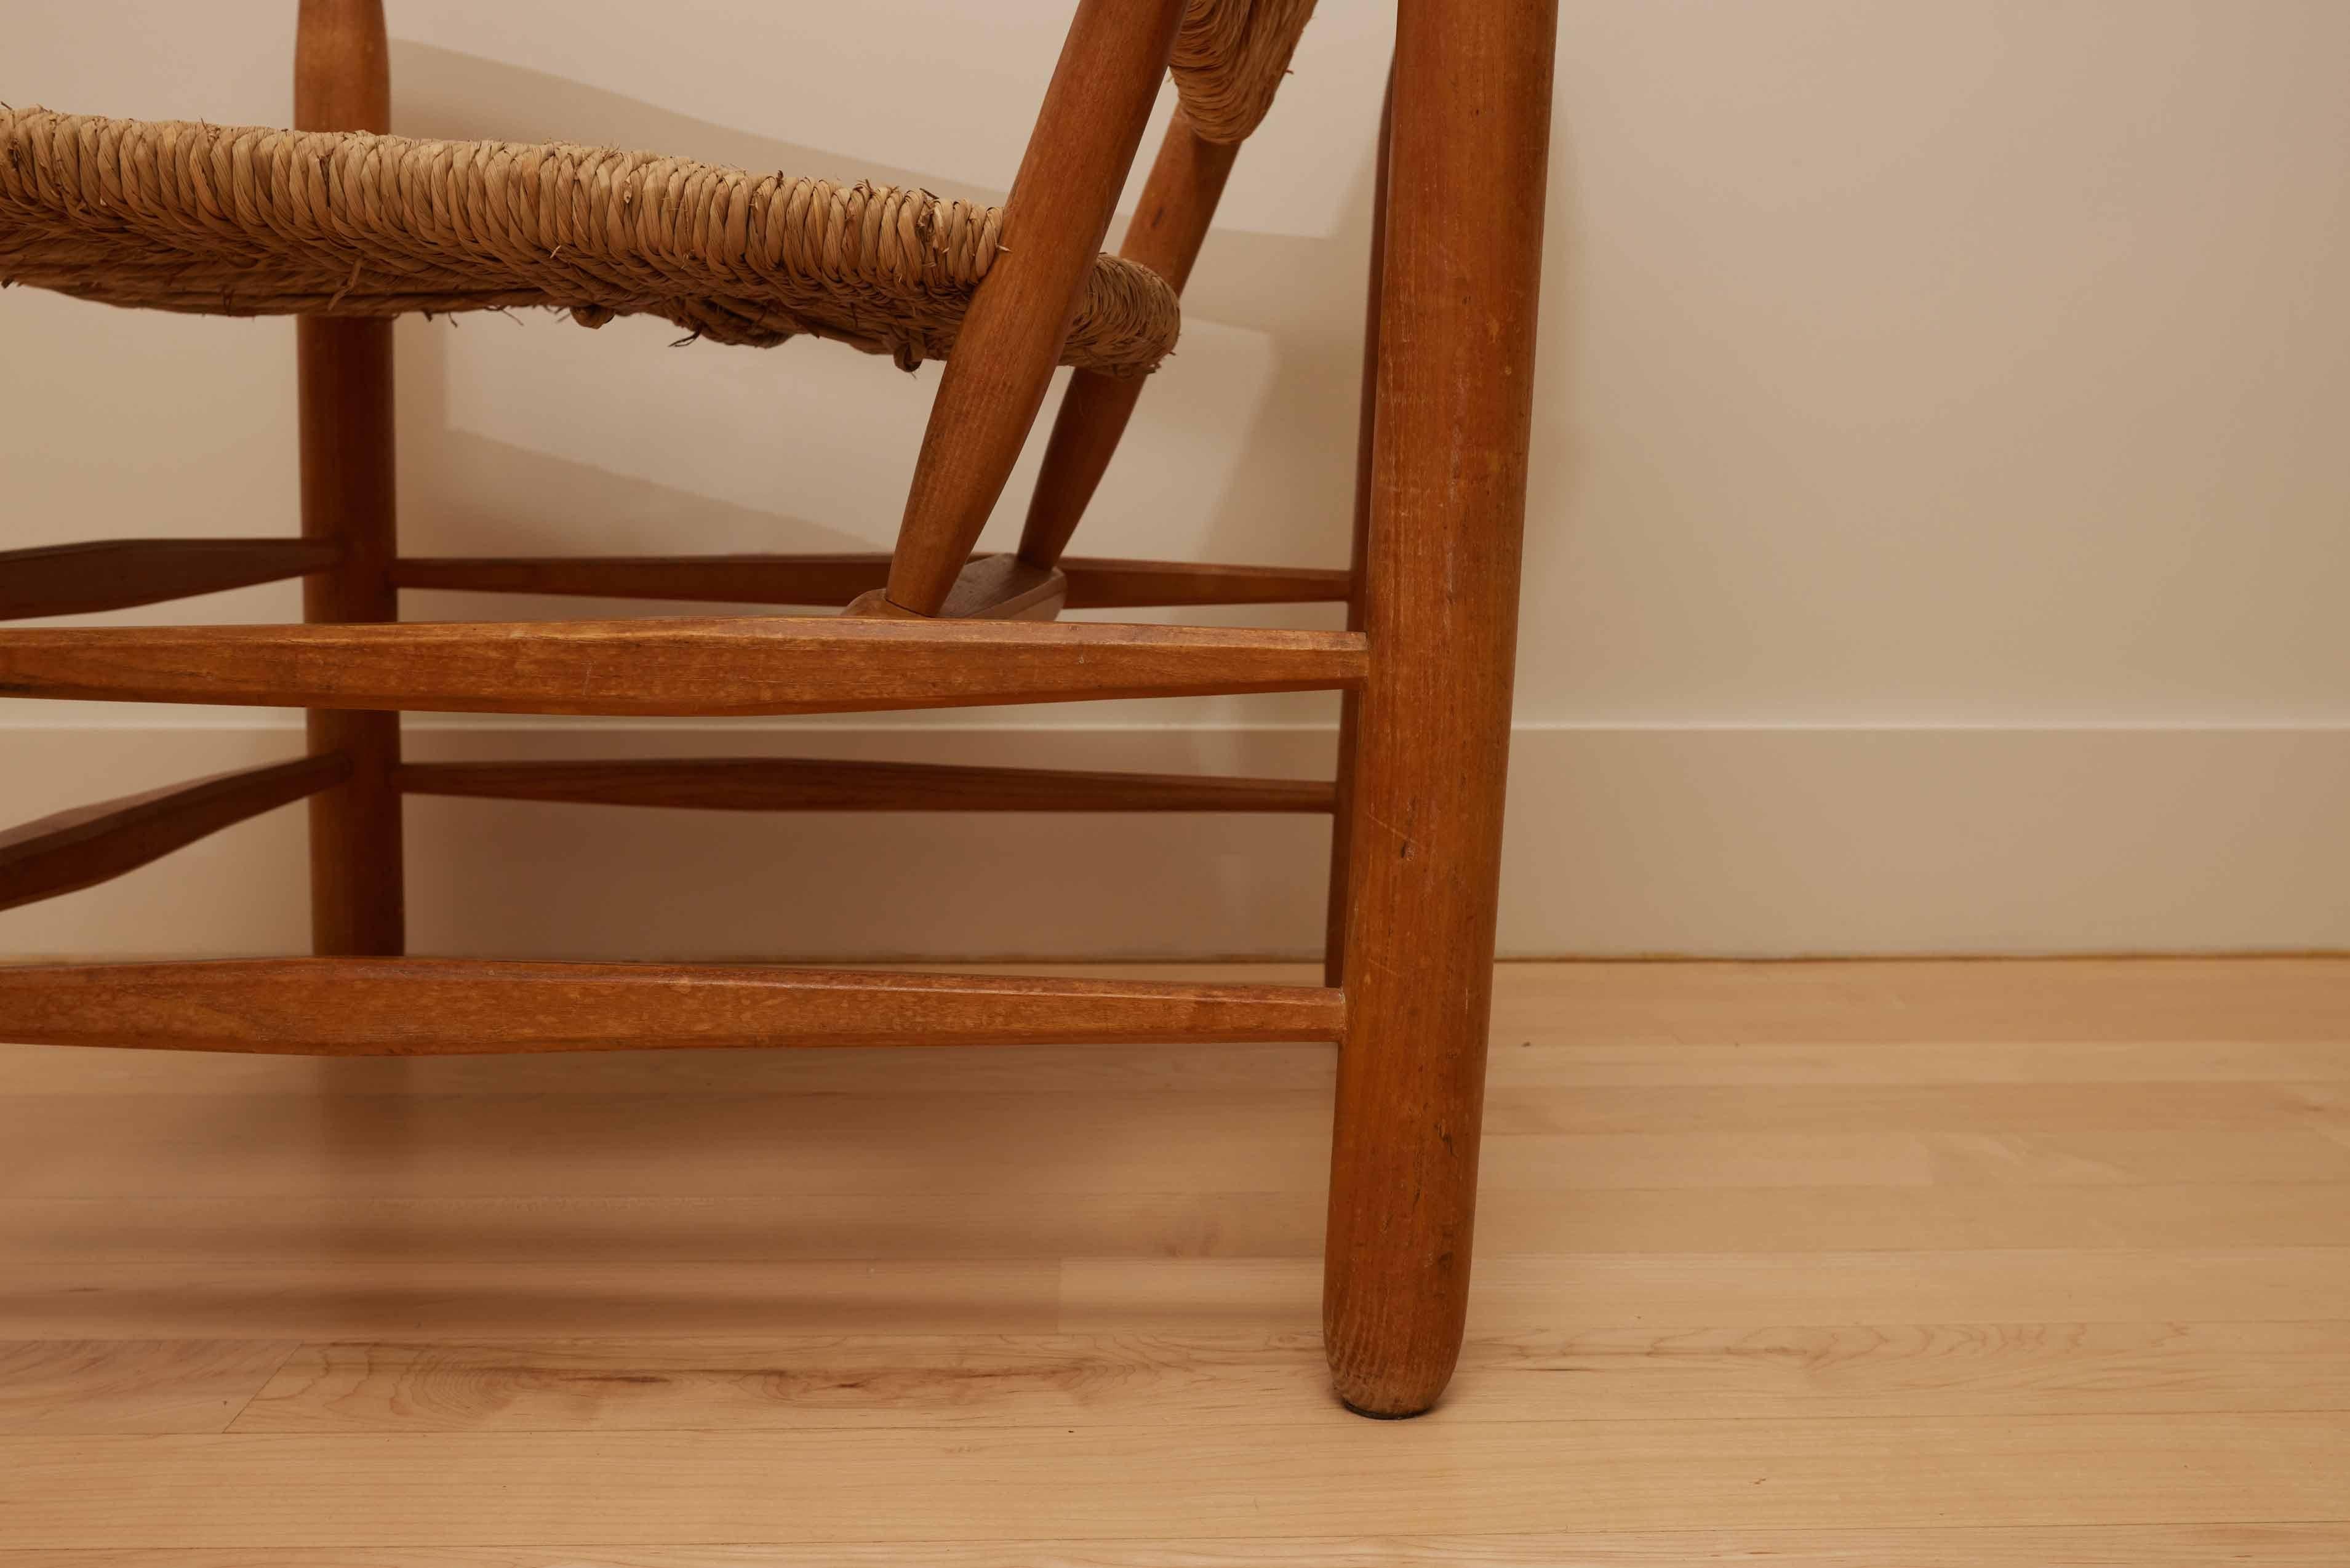 
Voici l'emblématique fauteuil Charlotte Perriand n°21 'Chamrousse', un summum du design français de 1950. Fabriquée en bois de frêne exquis, cette chaise unique en son genre constitue une pièce d'apparat dans n'importe quelle maison. Son design